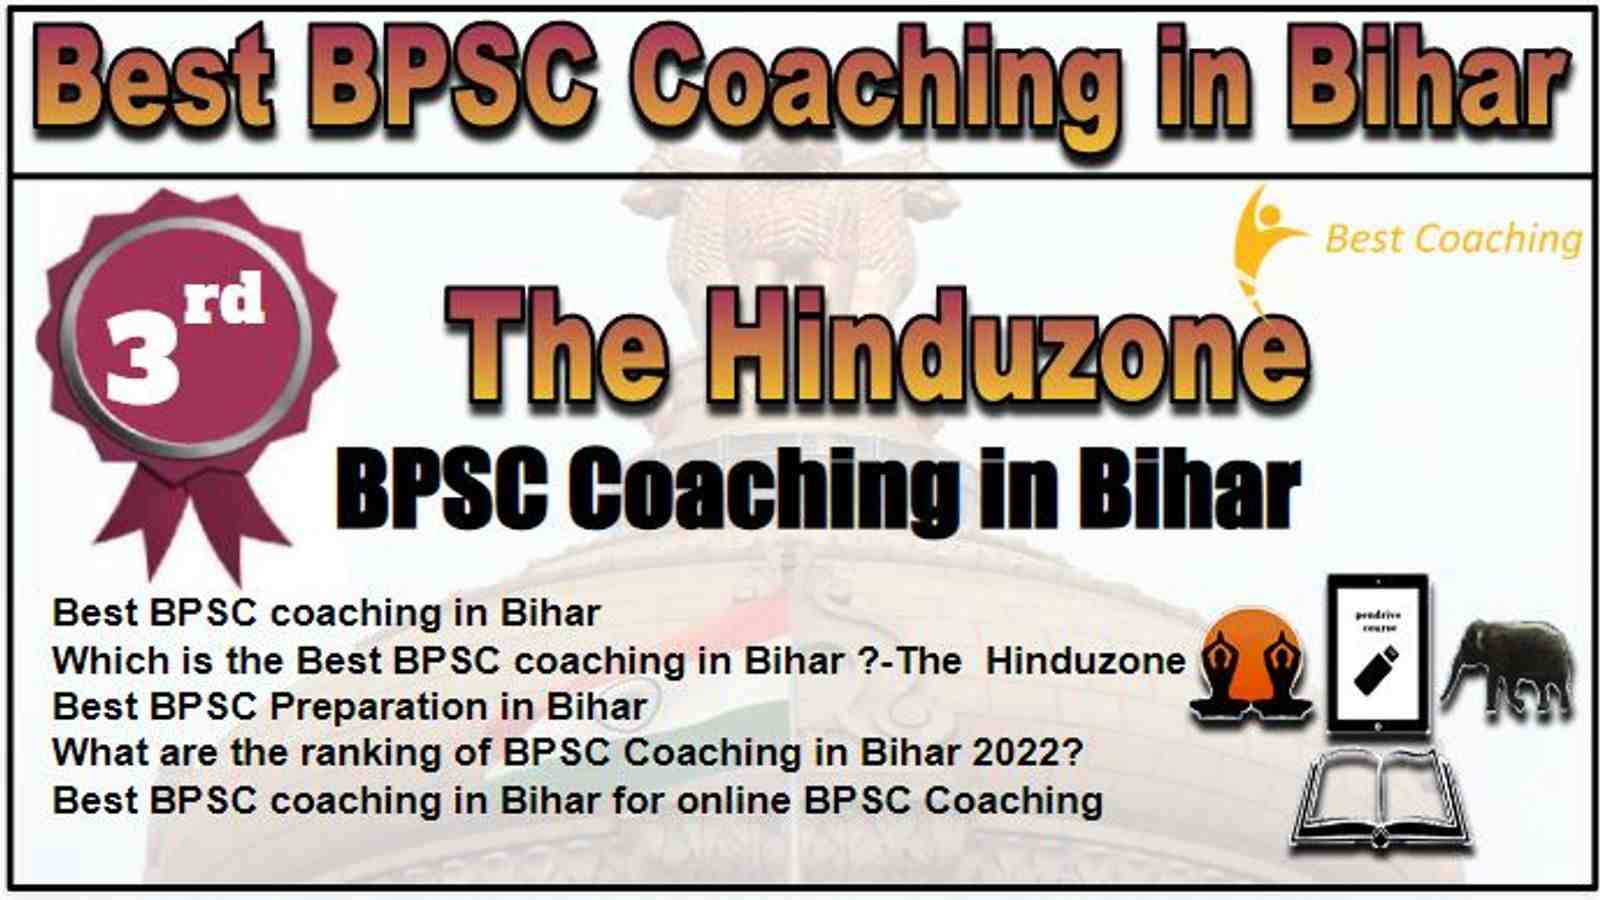 Rank 3 Best BPSC Coaching in Bihar